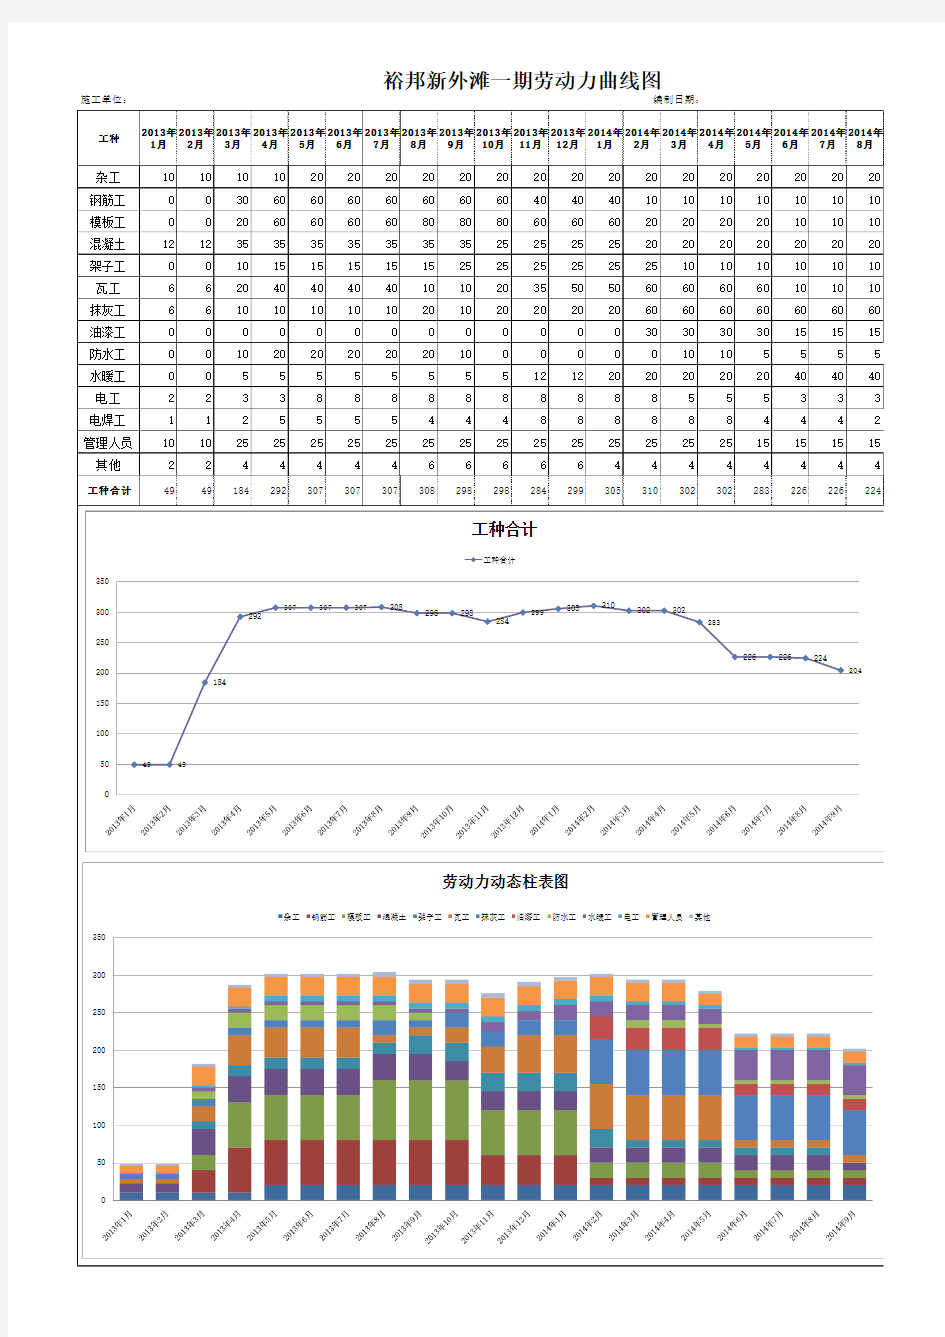 2013劳动力计划曲线图、动态柱表图(配合施工组织设计的文件)